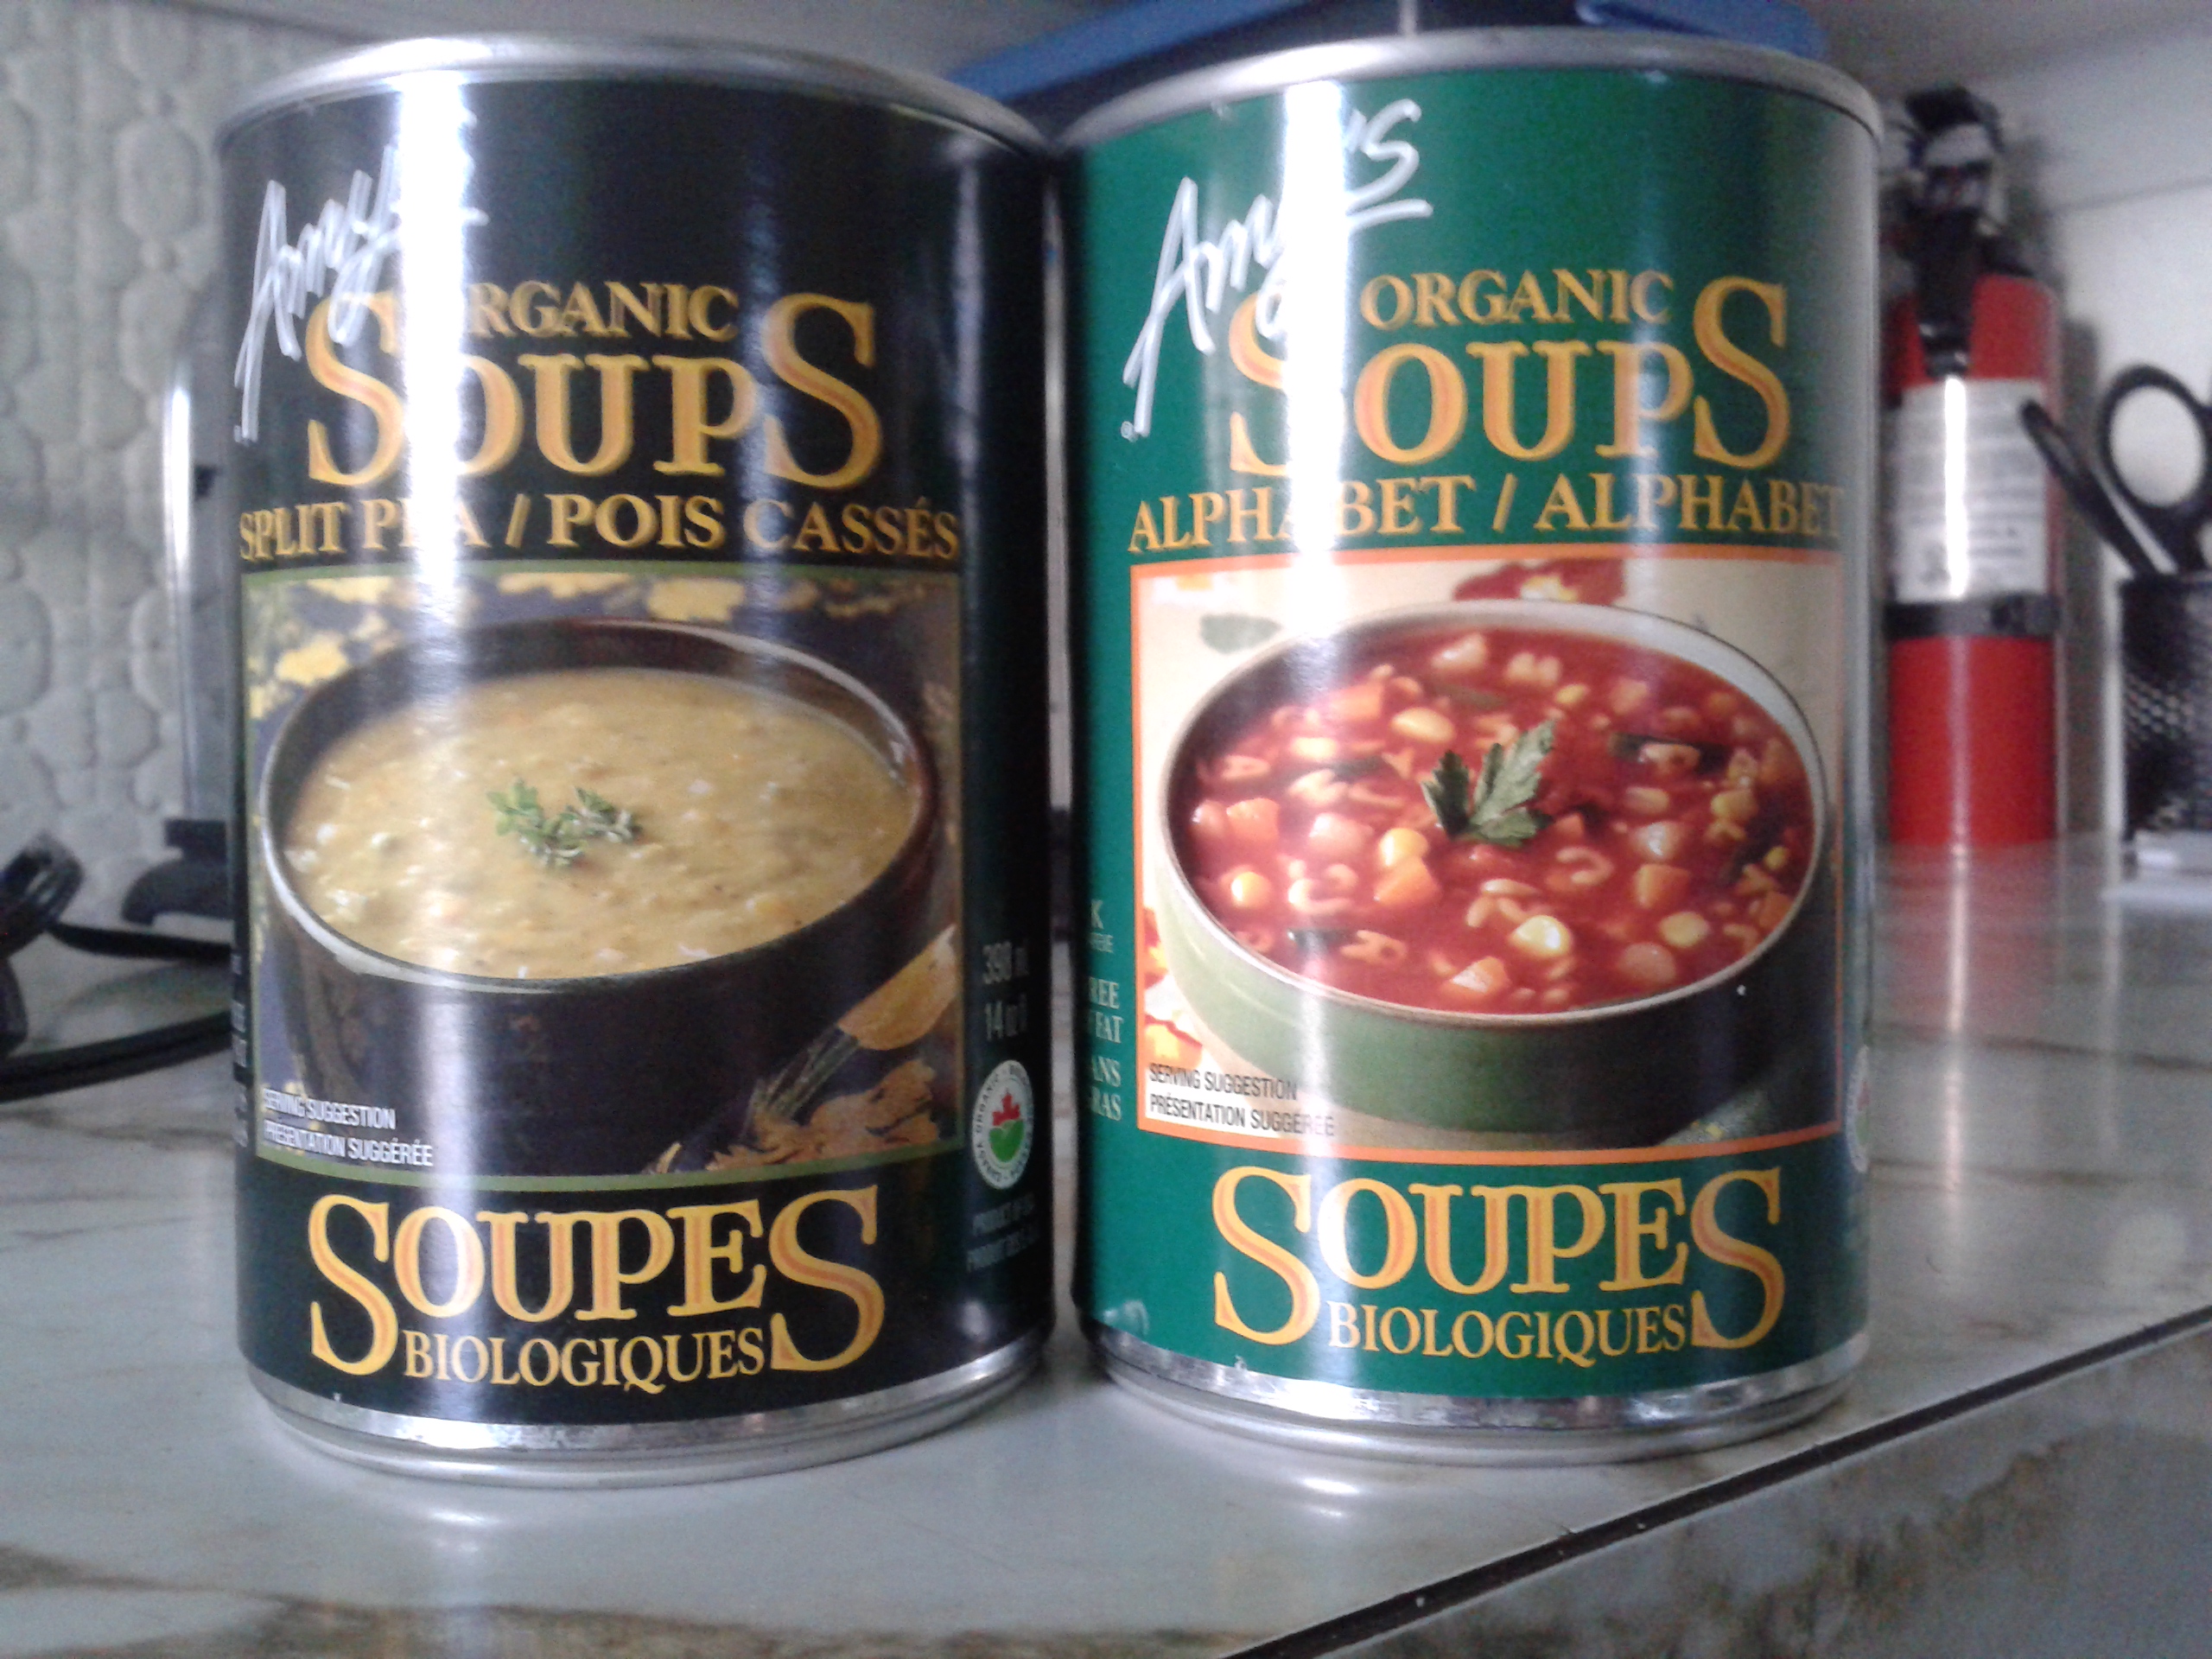 J'ai acheté la soupe aux pois cassés et "alphabet".